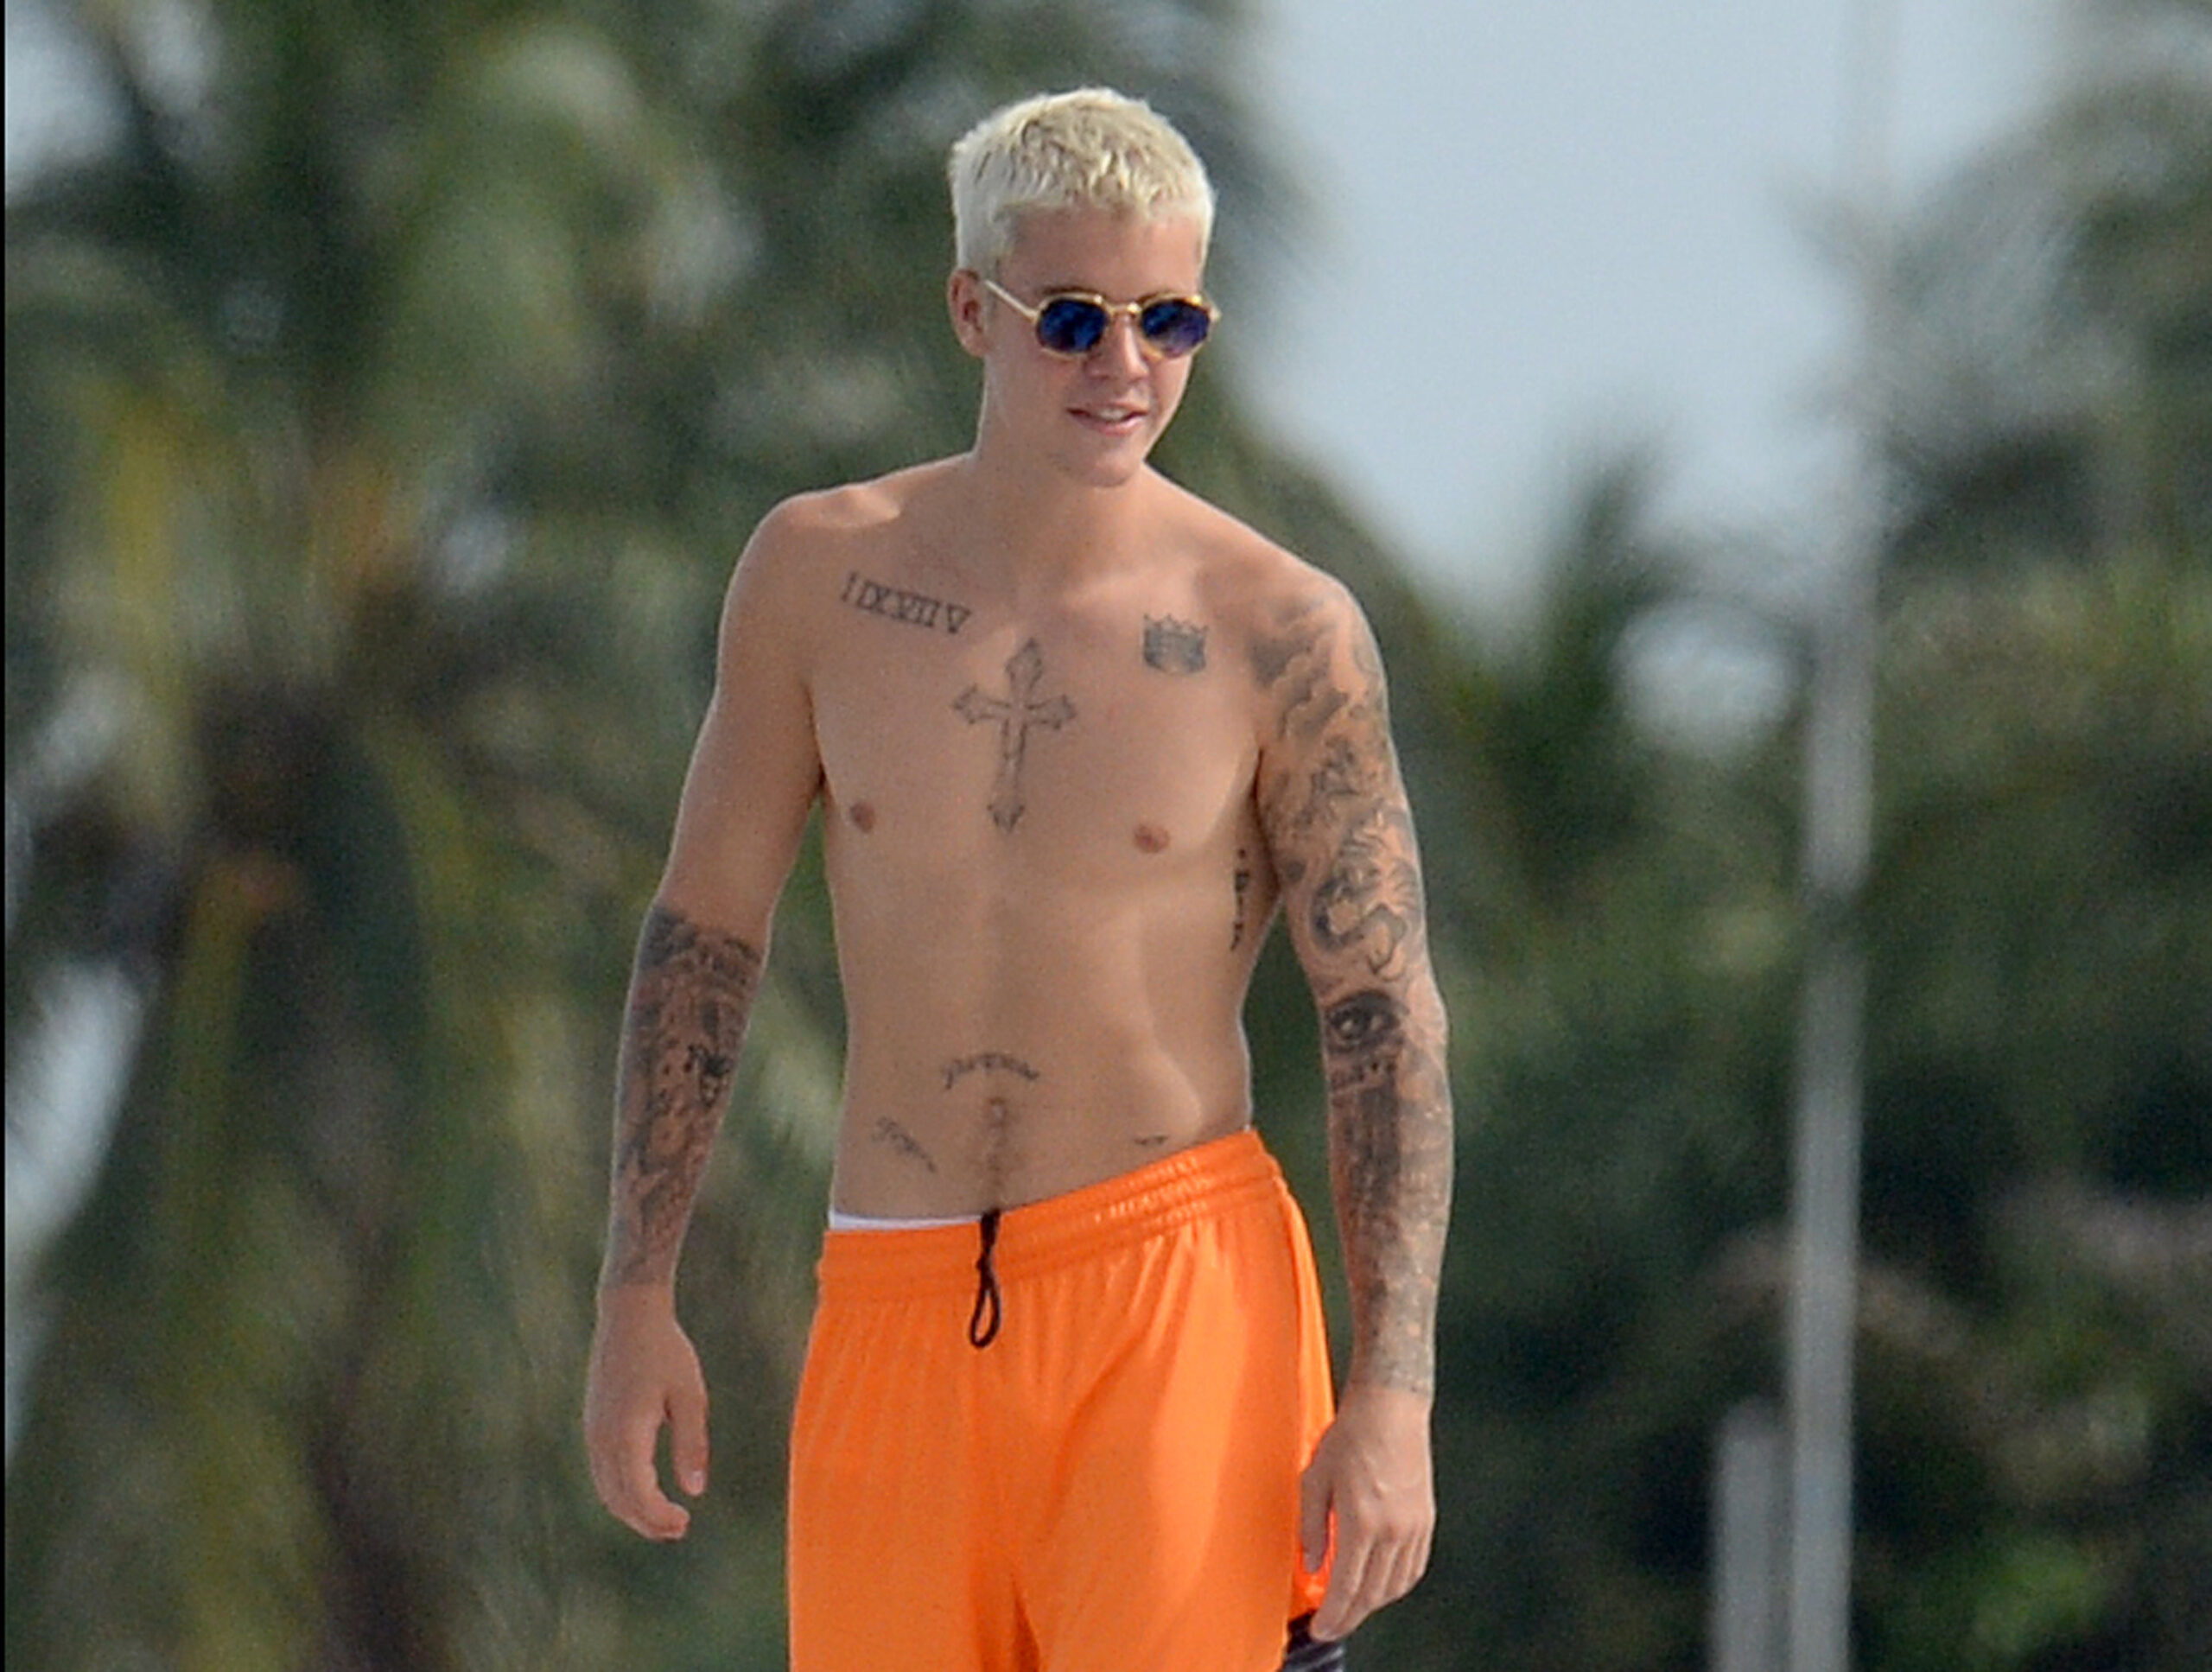 FOTO: Justin Bieber s-a făcut de râs. Uite cum a apărut la plajă!